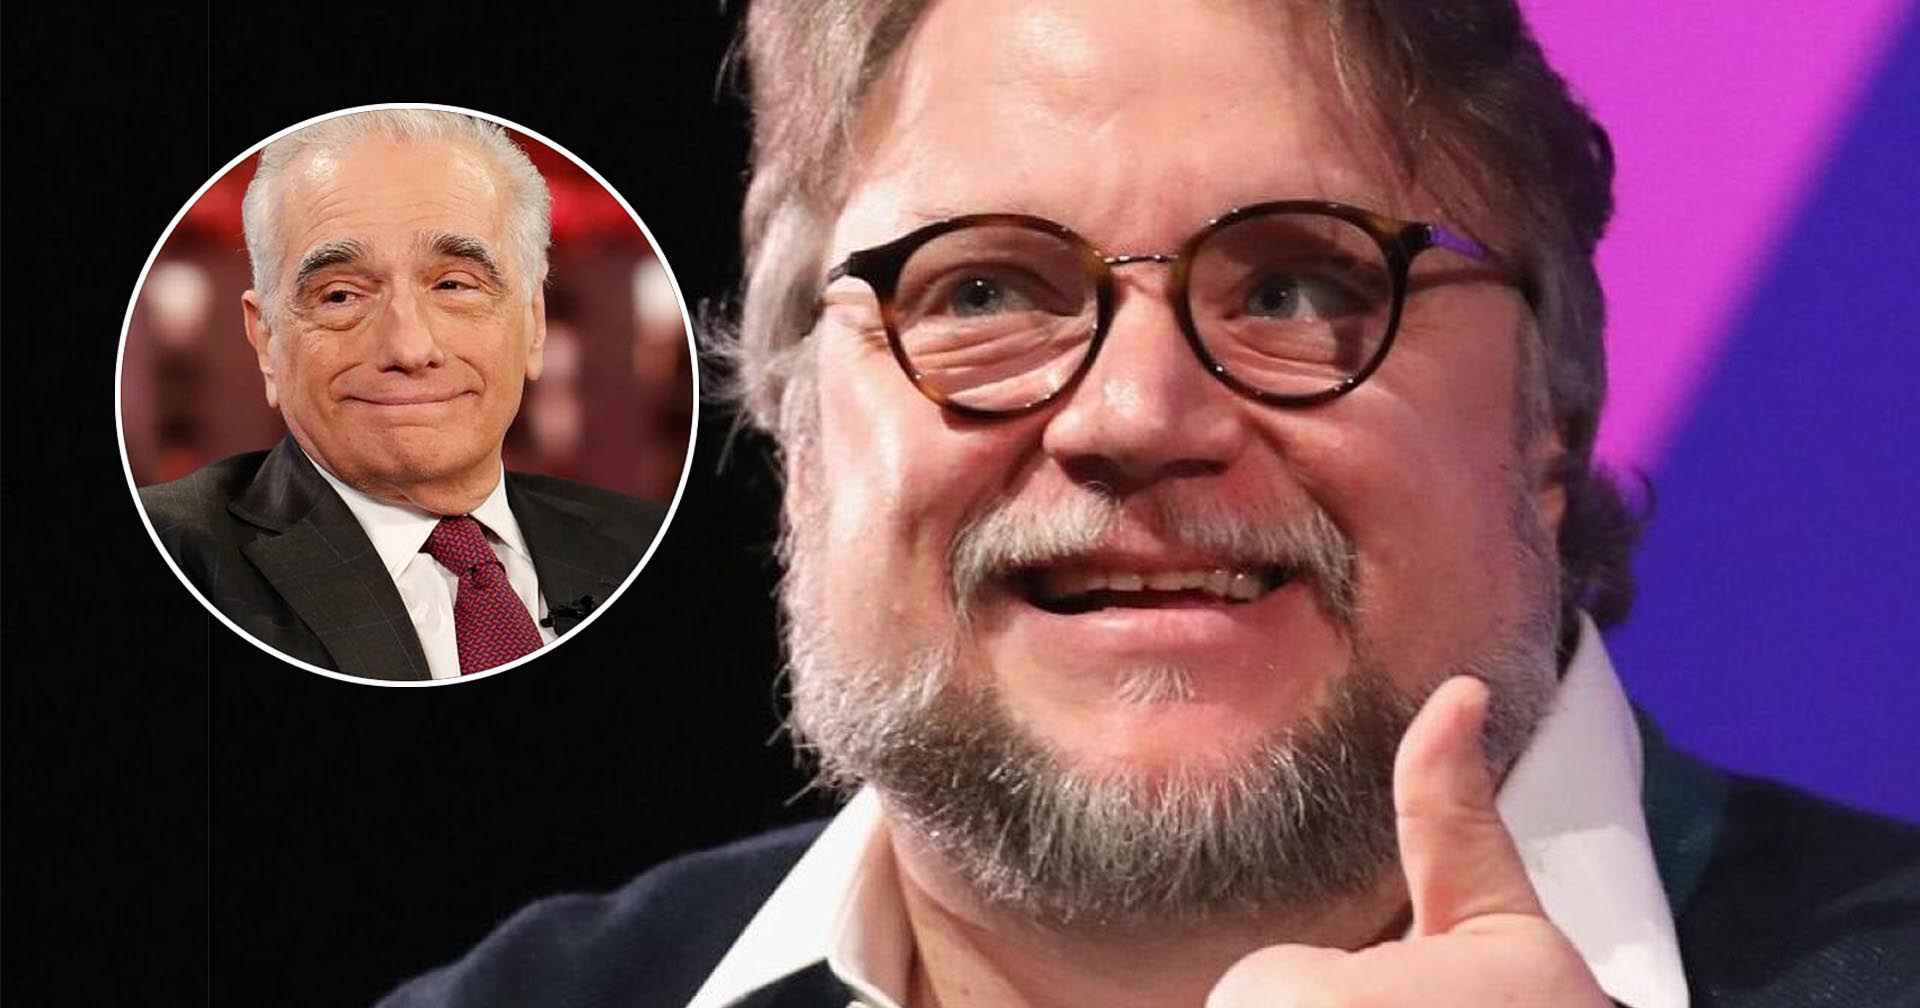 Guillermo del Toro ออกโรงปกป้อง Martin Scorsese หลังถูกสื่อเขียนโจมตีว่าเป็น “อัจฉริยะที่ไม่มีความคู่ควร”